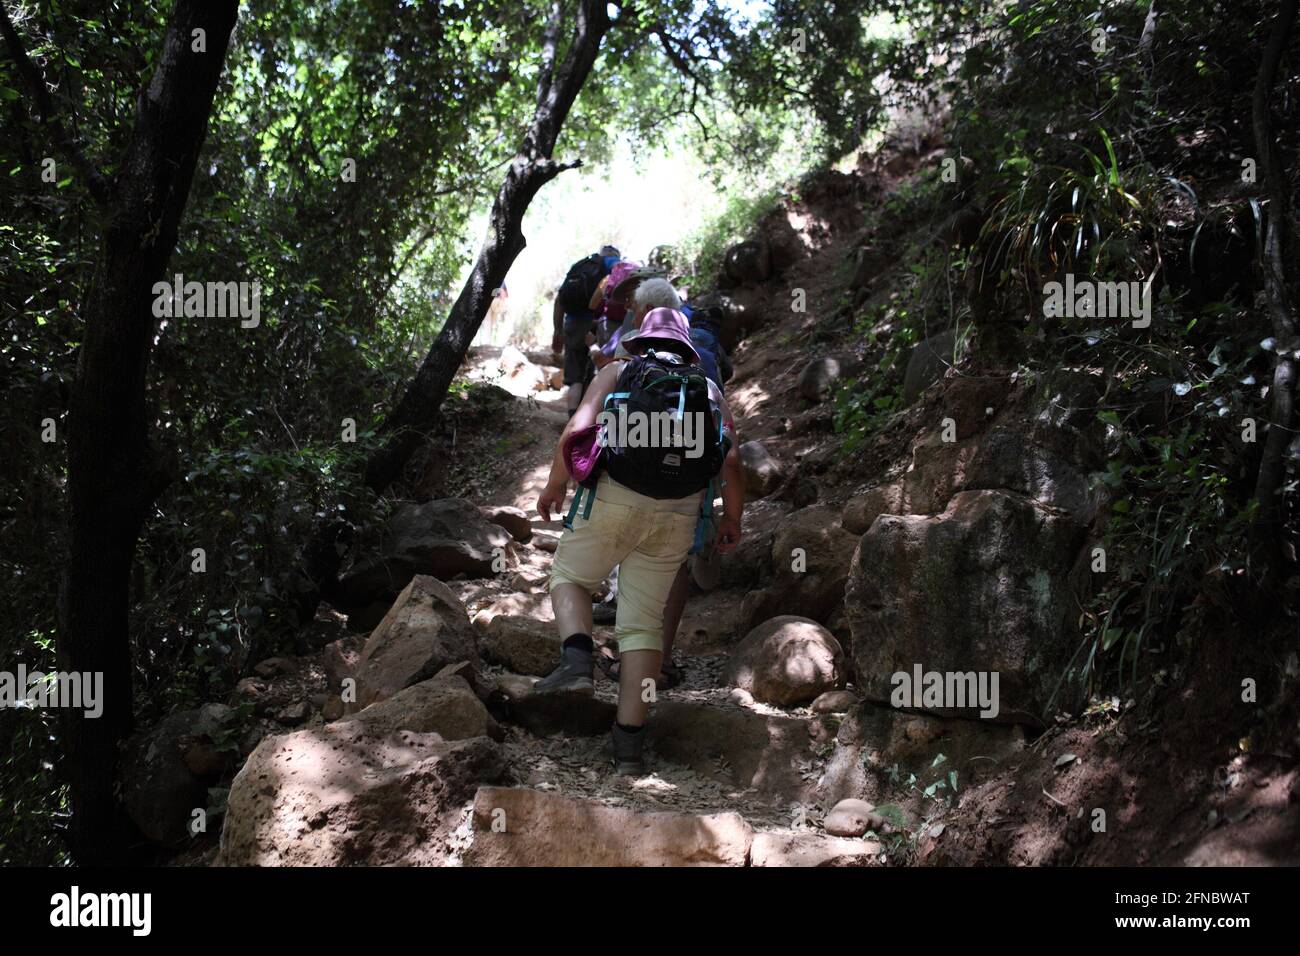 Gli adulti più anziani camminano su un sentiero nella foresta o nella zona della valle del fiume Banias una delle fonti del fiume Giordano, rocce di basalto intorno. Foto Stock